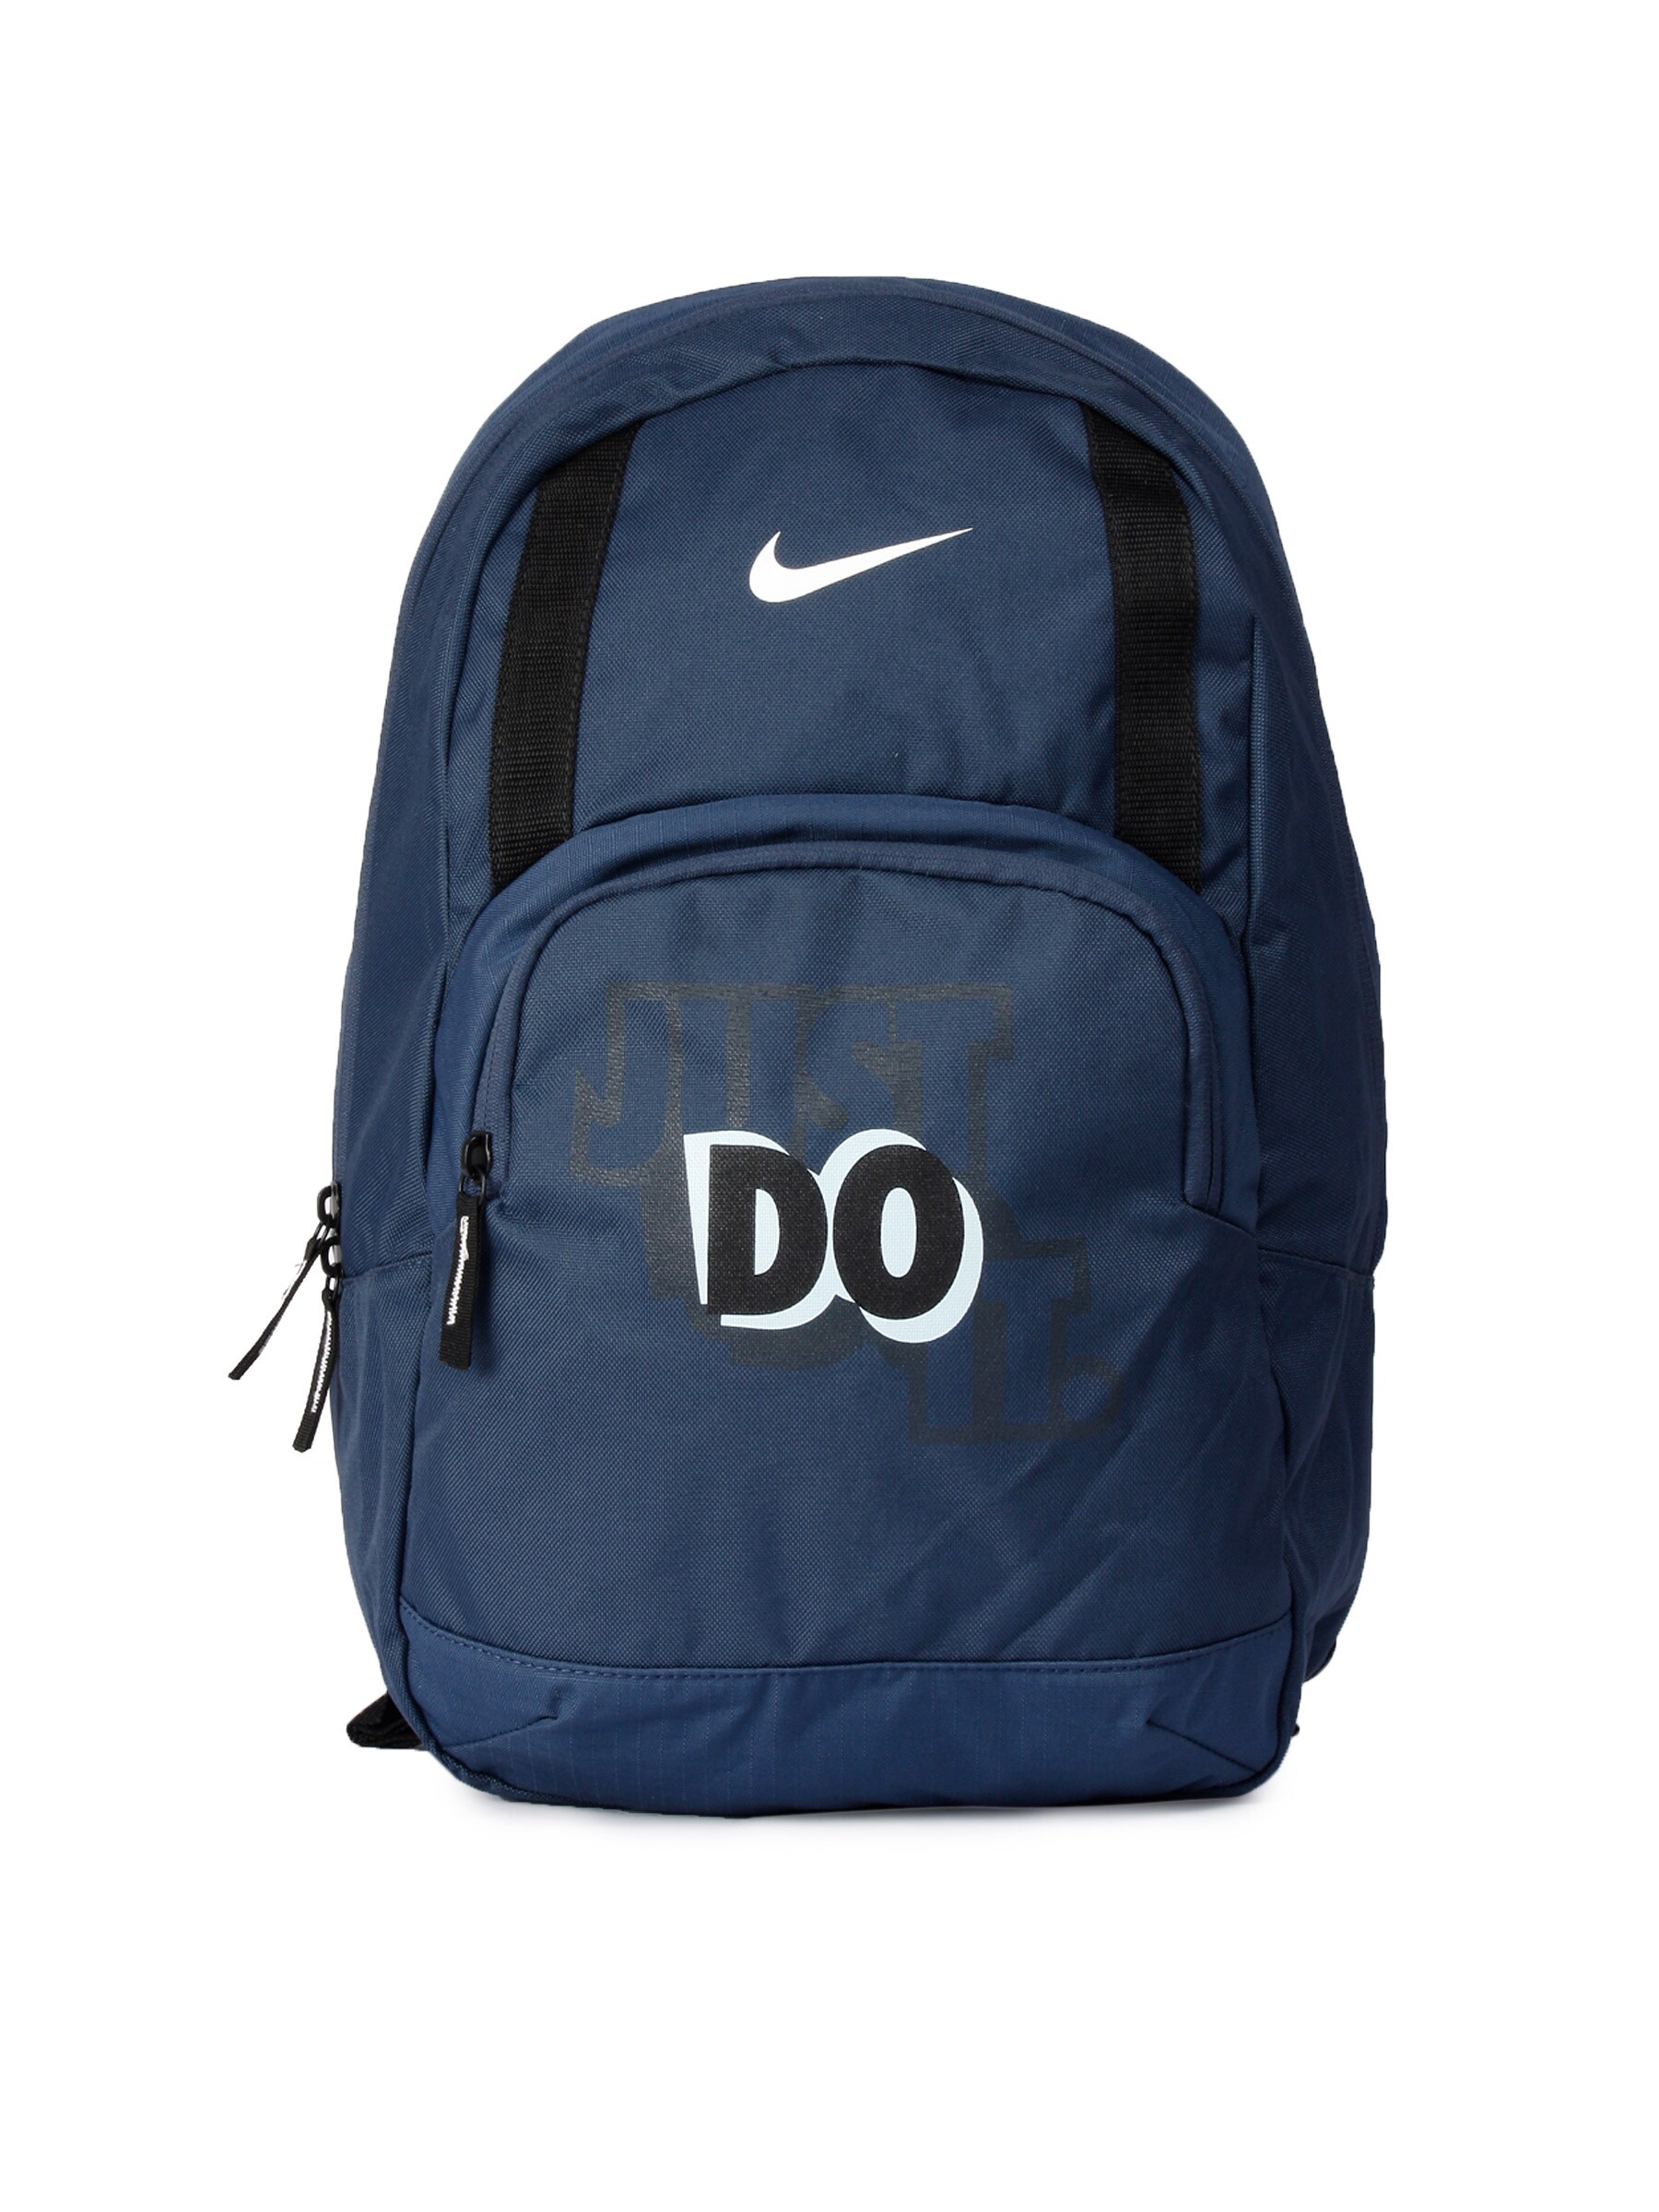 Nike Unisex Nike Classic Backpack Blue Backpack